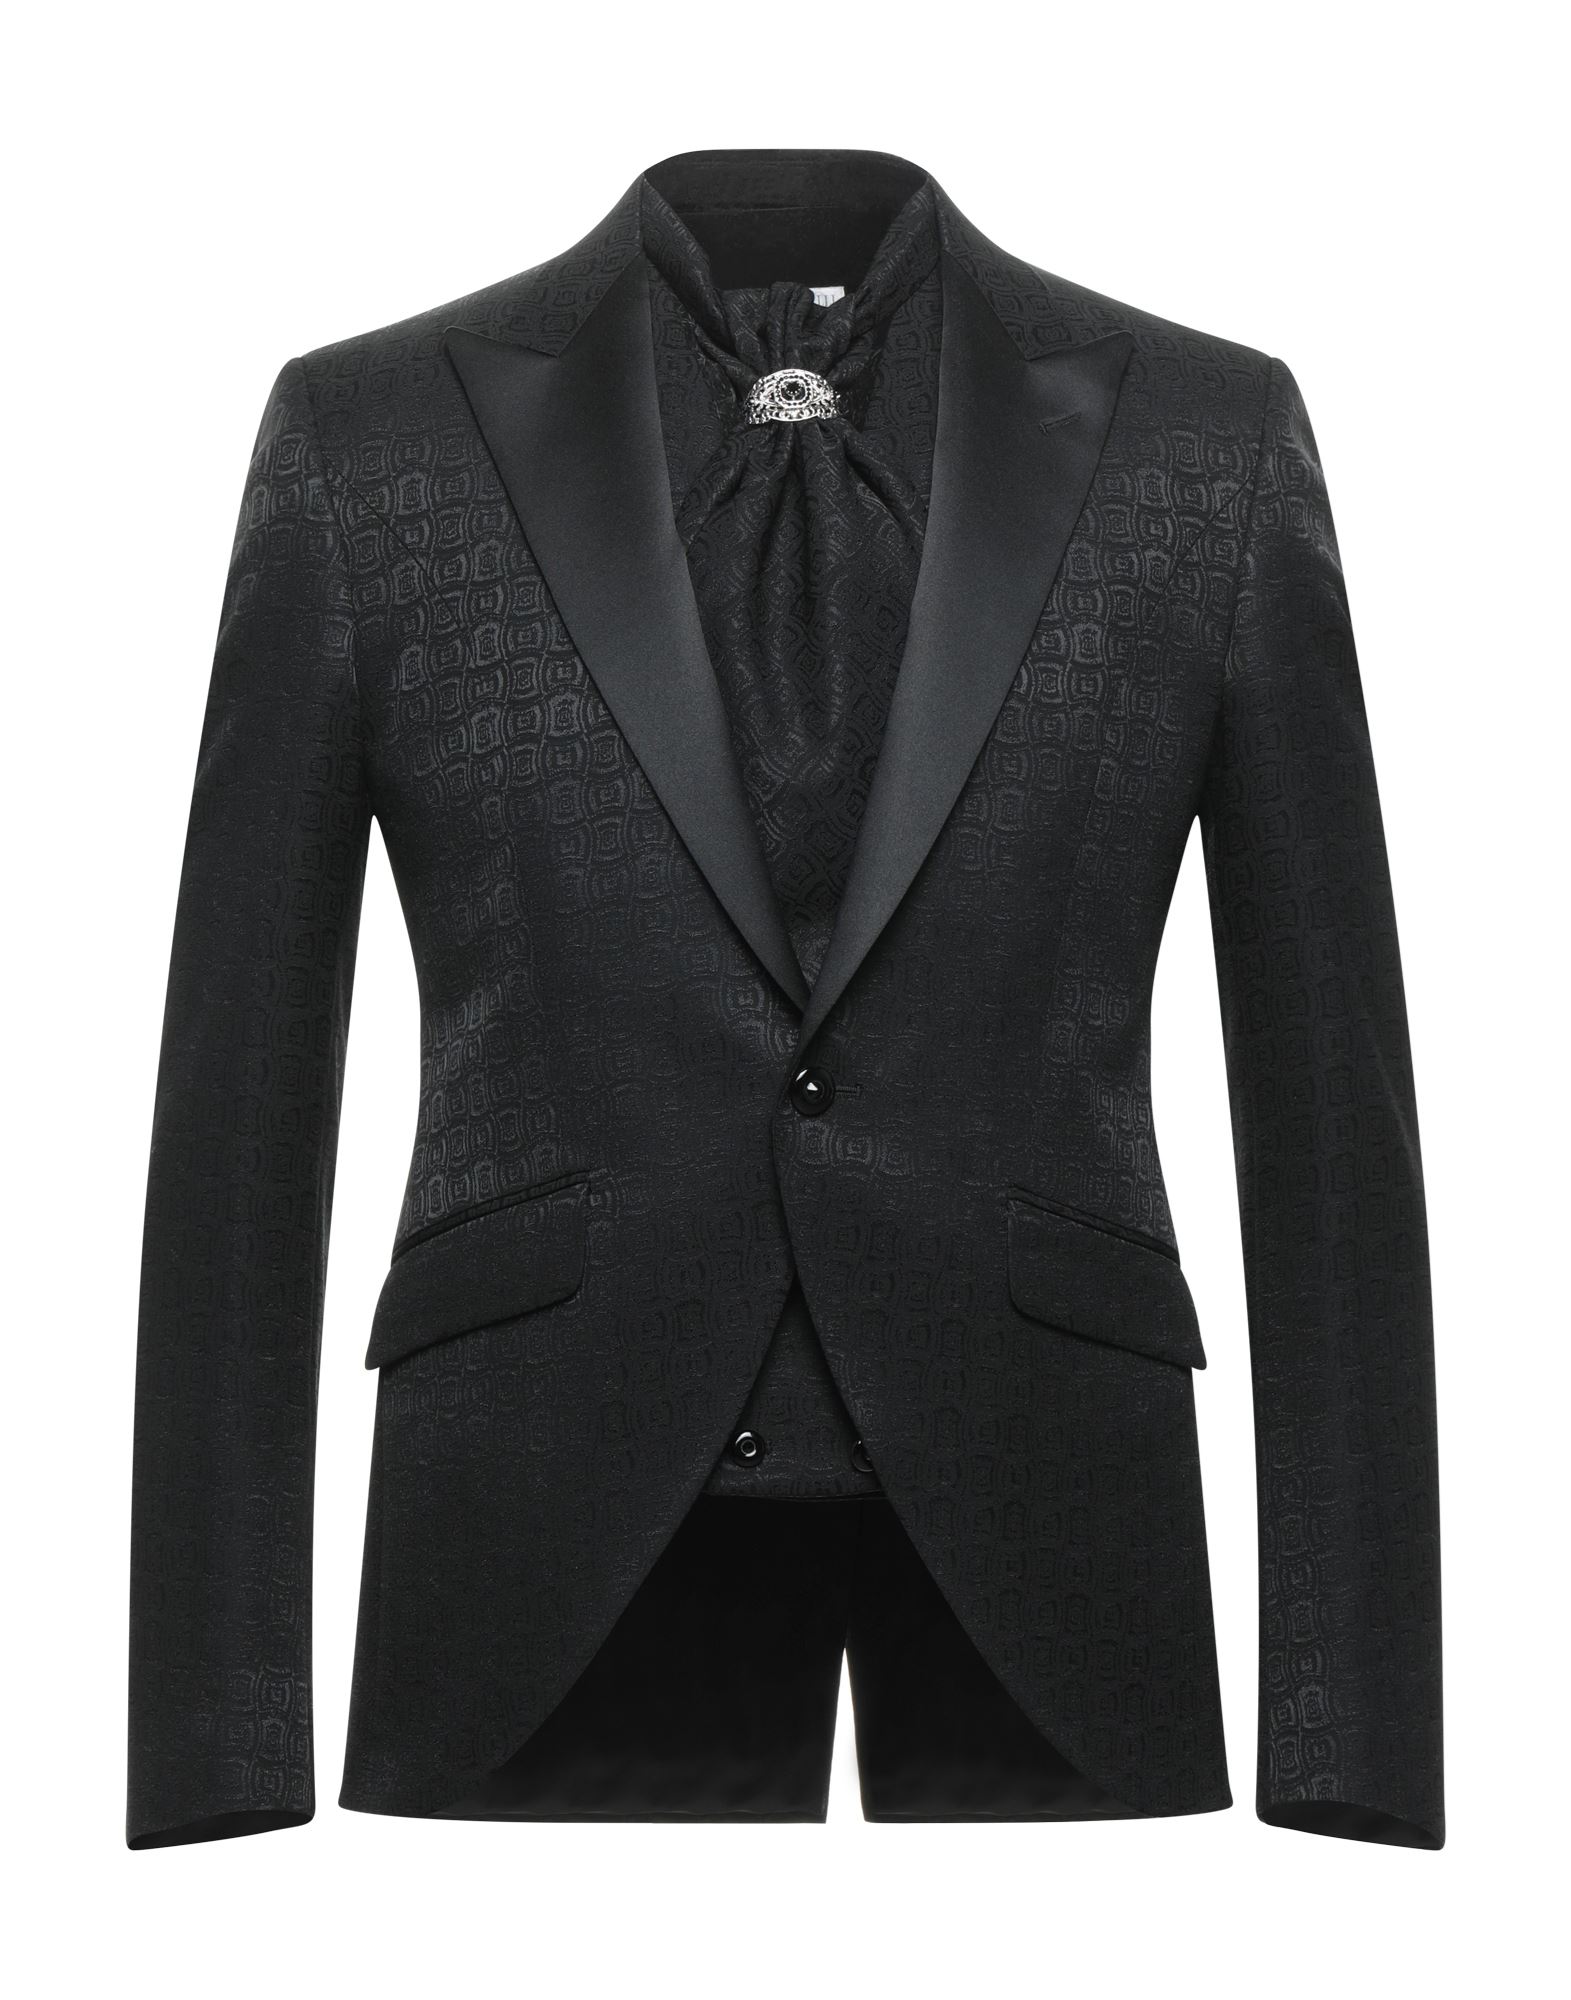 CARLO PIGNATELLI CERIMONIA Suit jackets